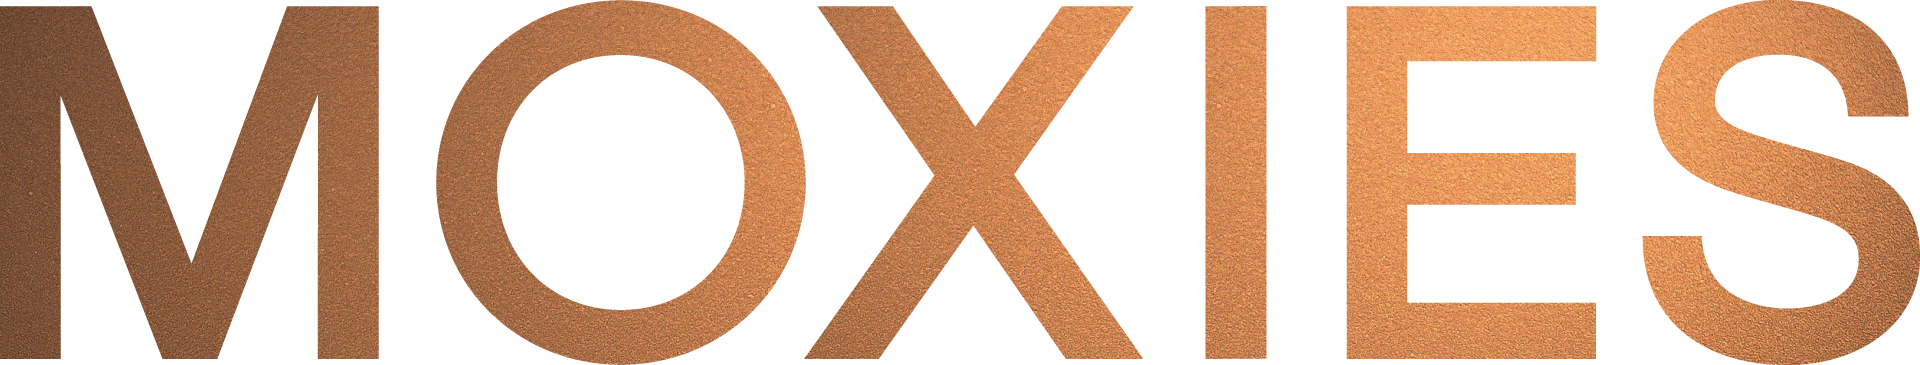 Moxies_Logo_RGB_FauxCopper (002).png